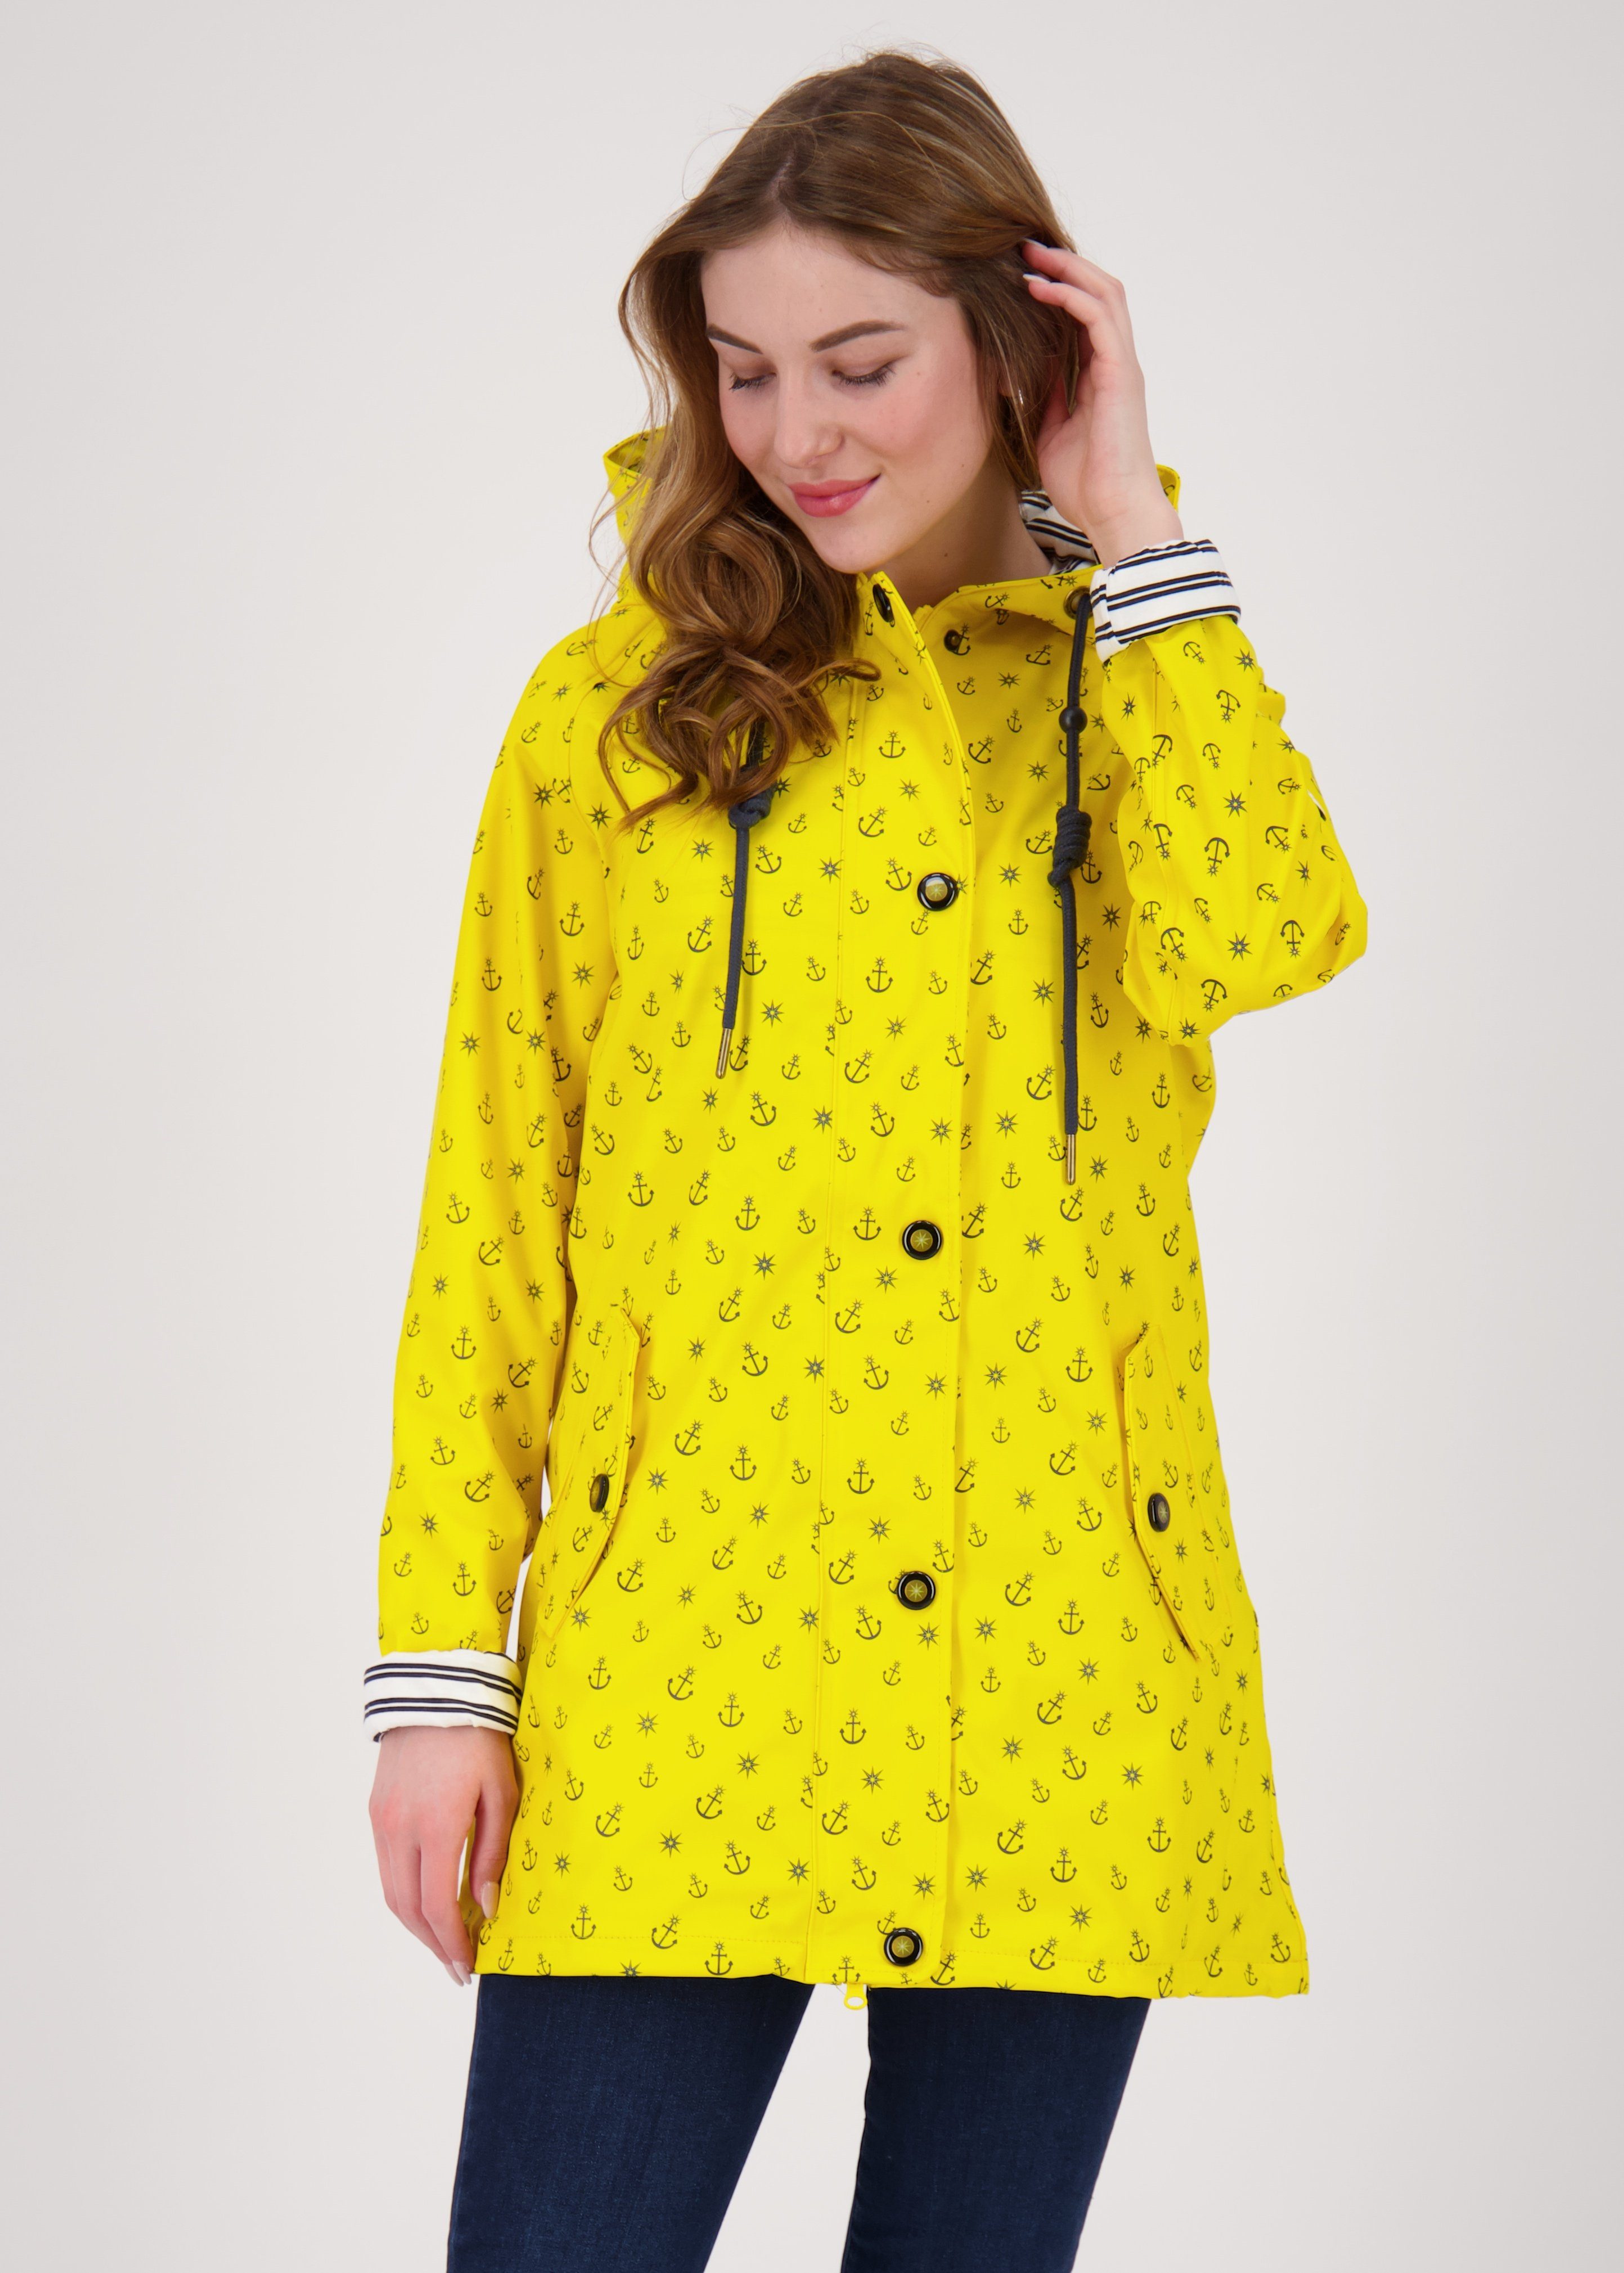 DEPROC Active Regenjacke Friesennerz #ankerglutzauber CS WOMEN auch in Großen Größen erhältlich yellow